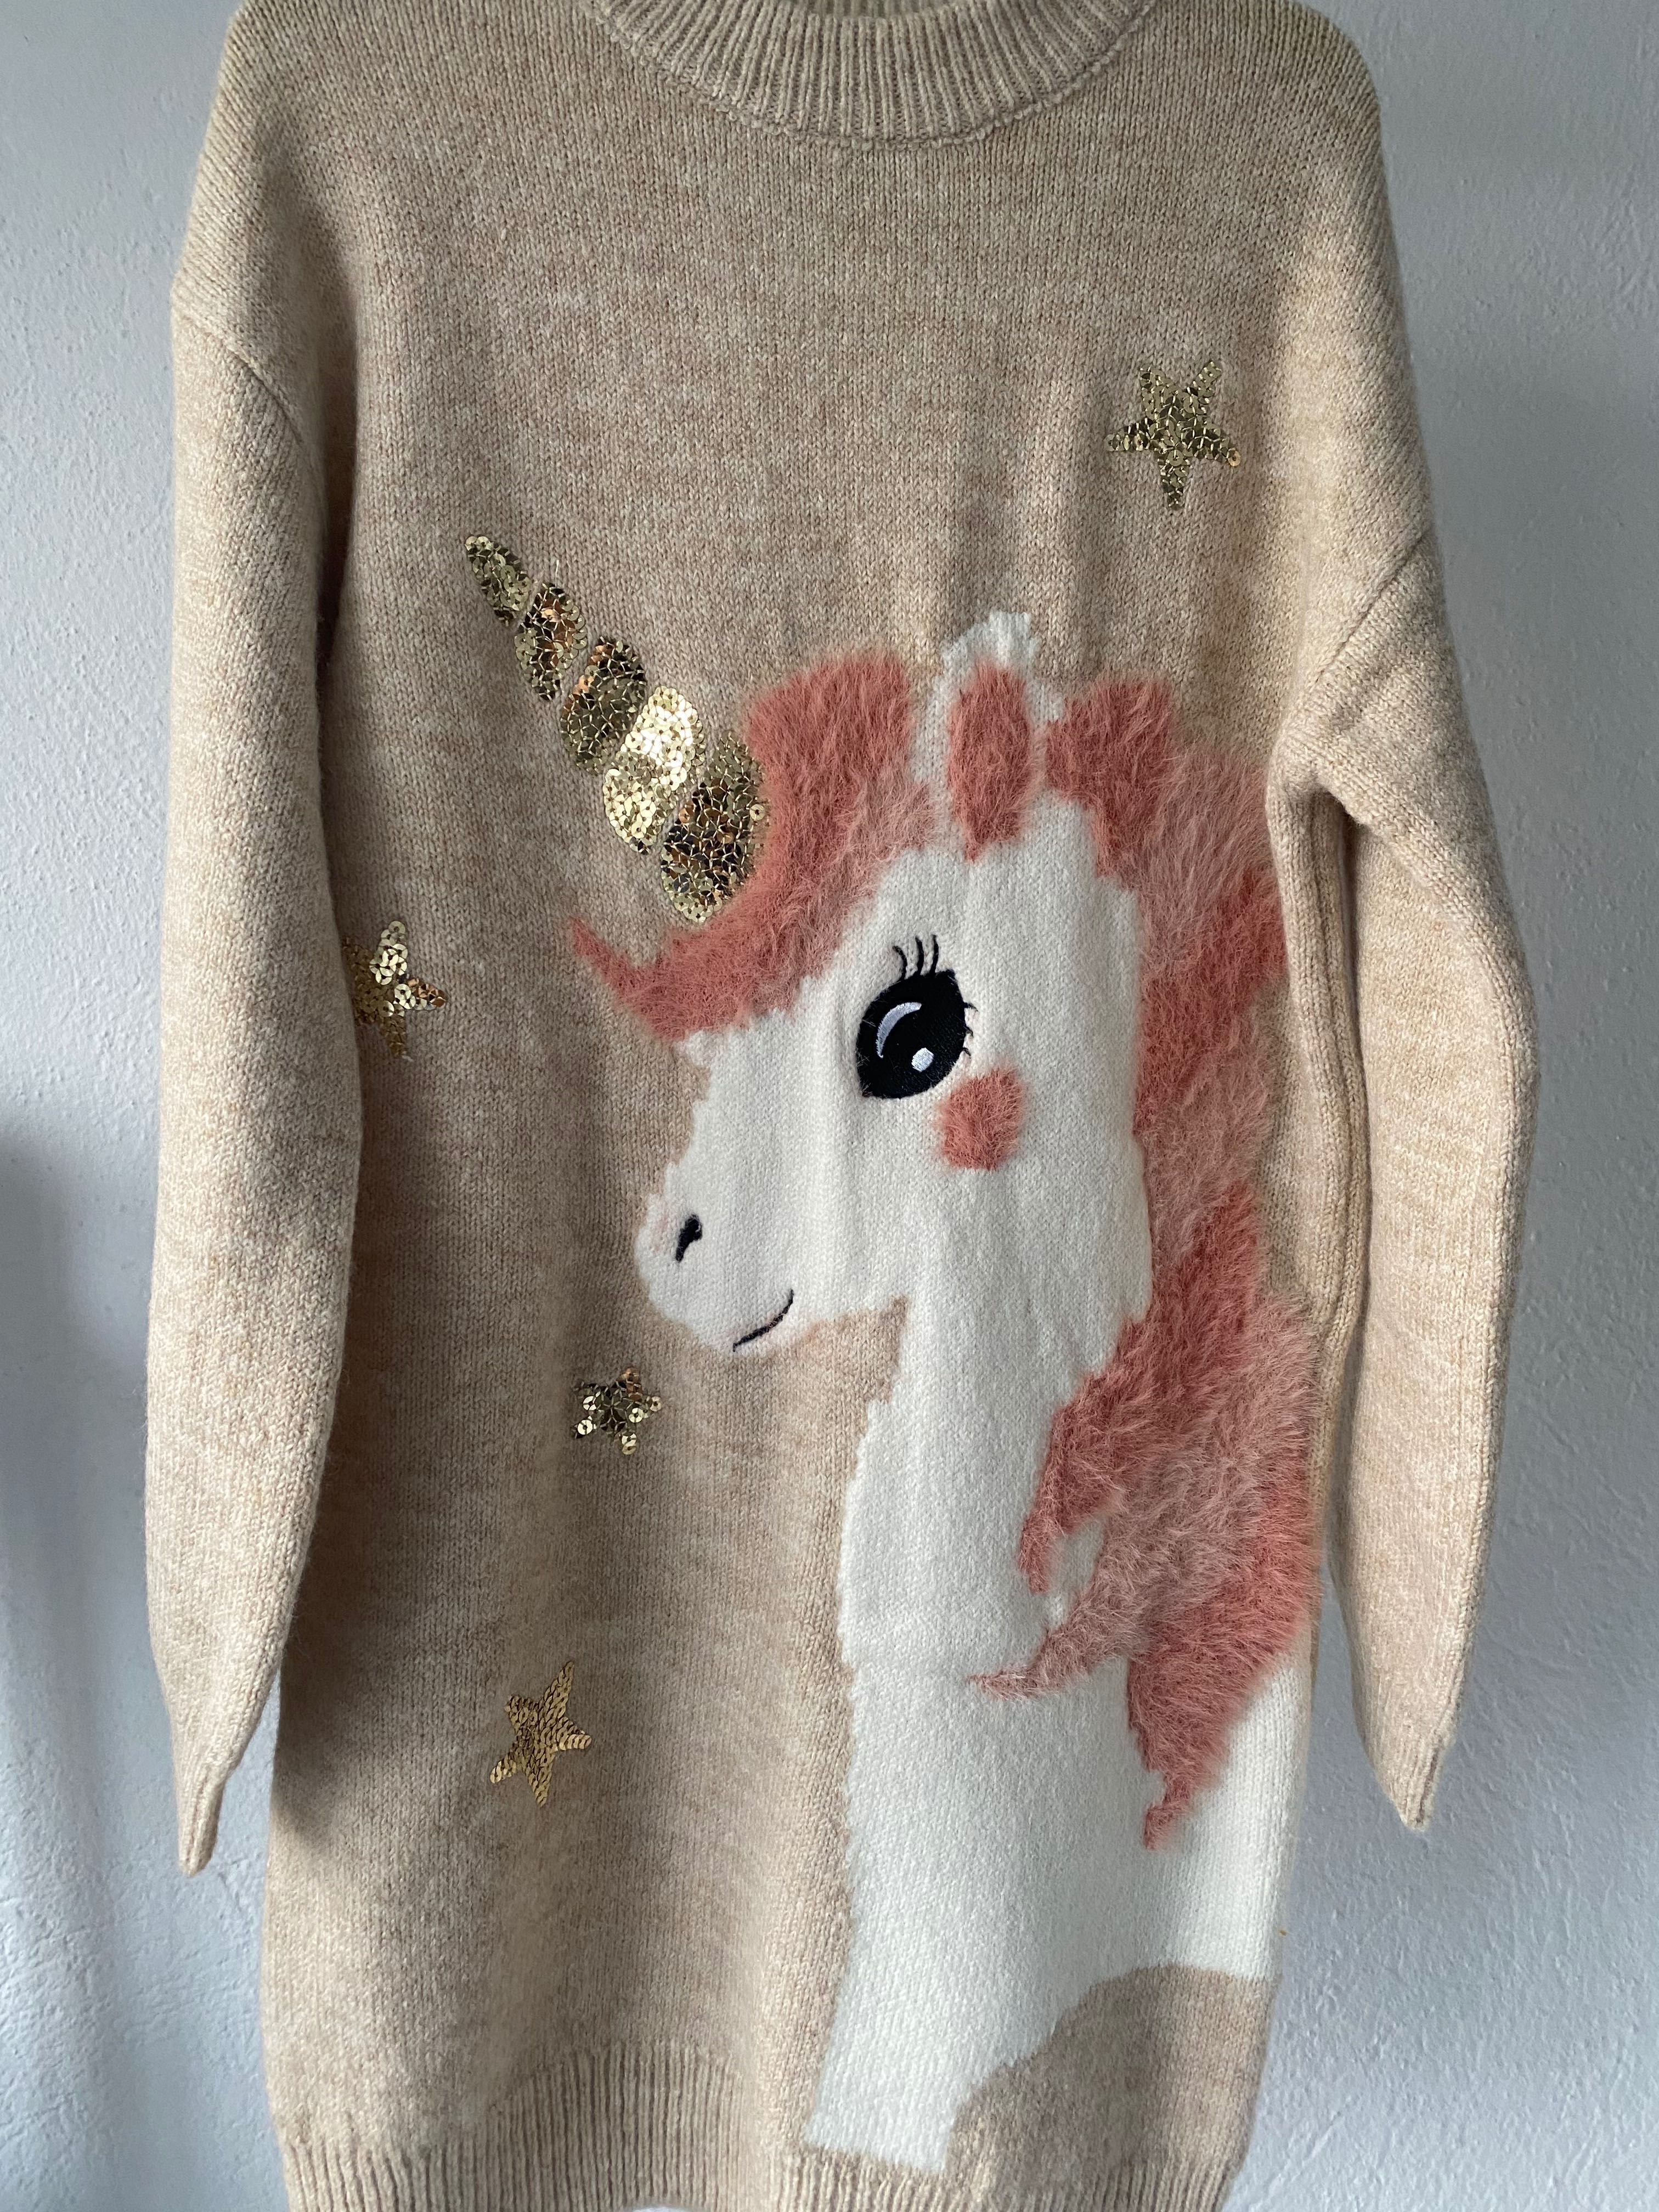 Pulover rochita iarna unicorn paiete 9 ani